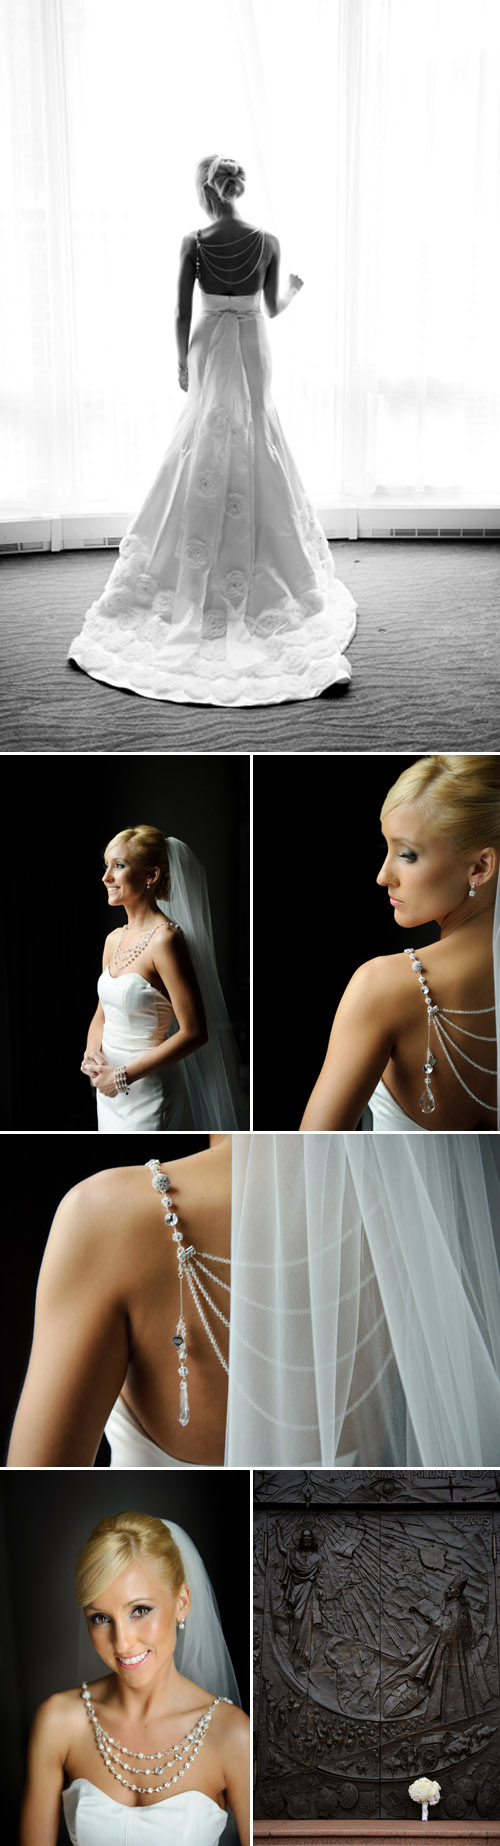 elegant Chicago wedding at Trump Tower, stylish wedding dress and bridal necklace, classic black tuxedo, wedding photos by Nakai Photography 